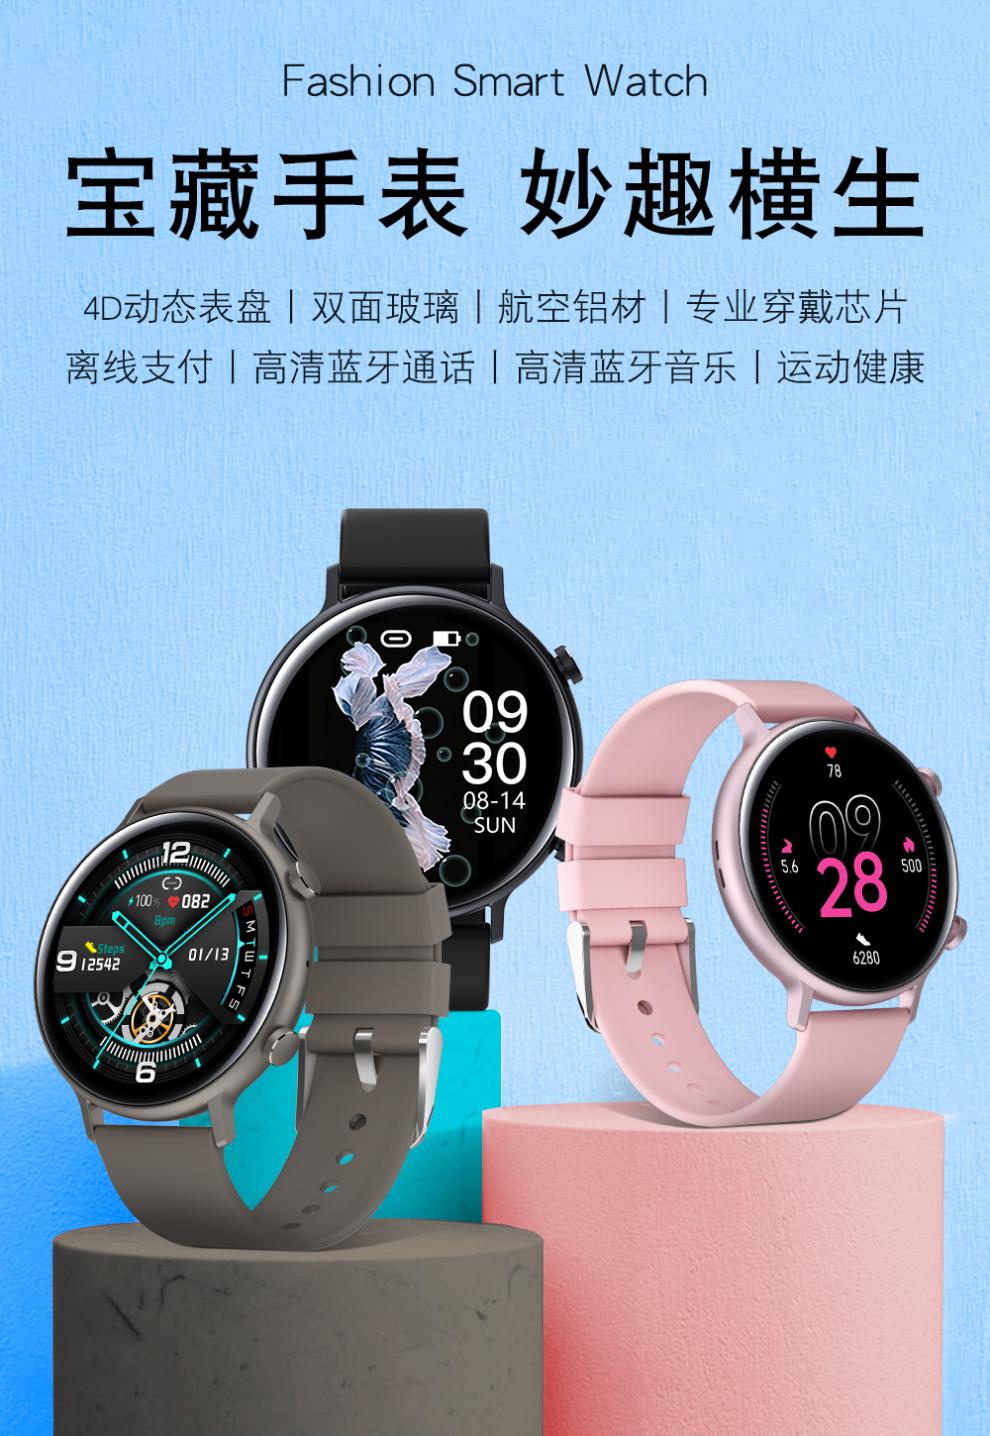 华为huawei手机适配苹果小米通用2021年新款超薄女士智能手表蓝牙通话